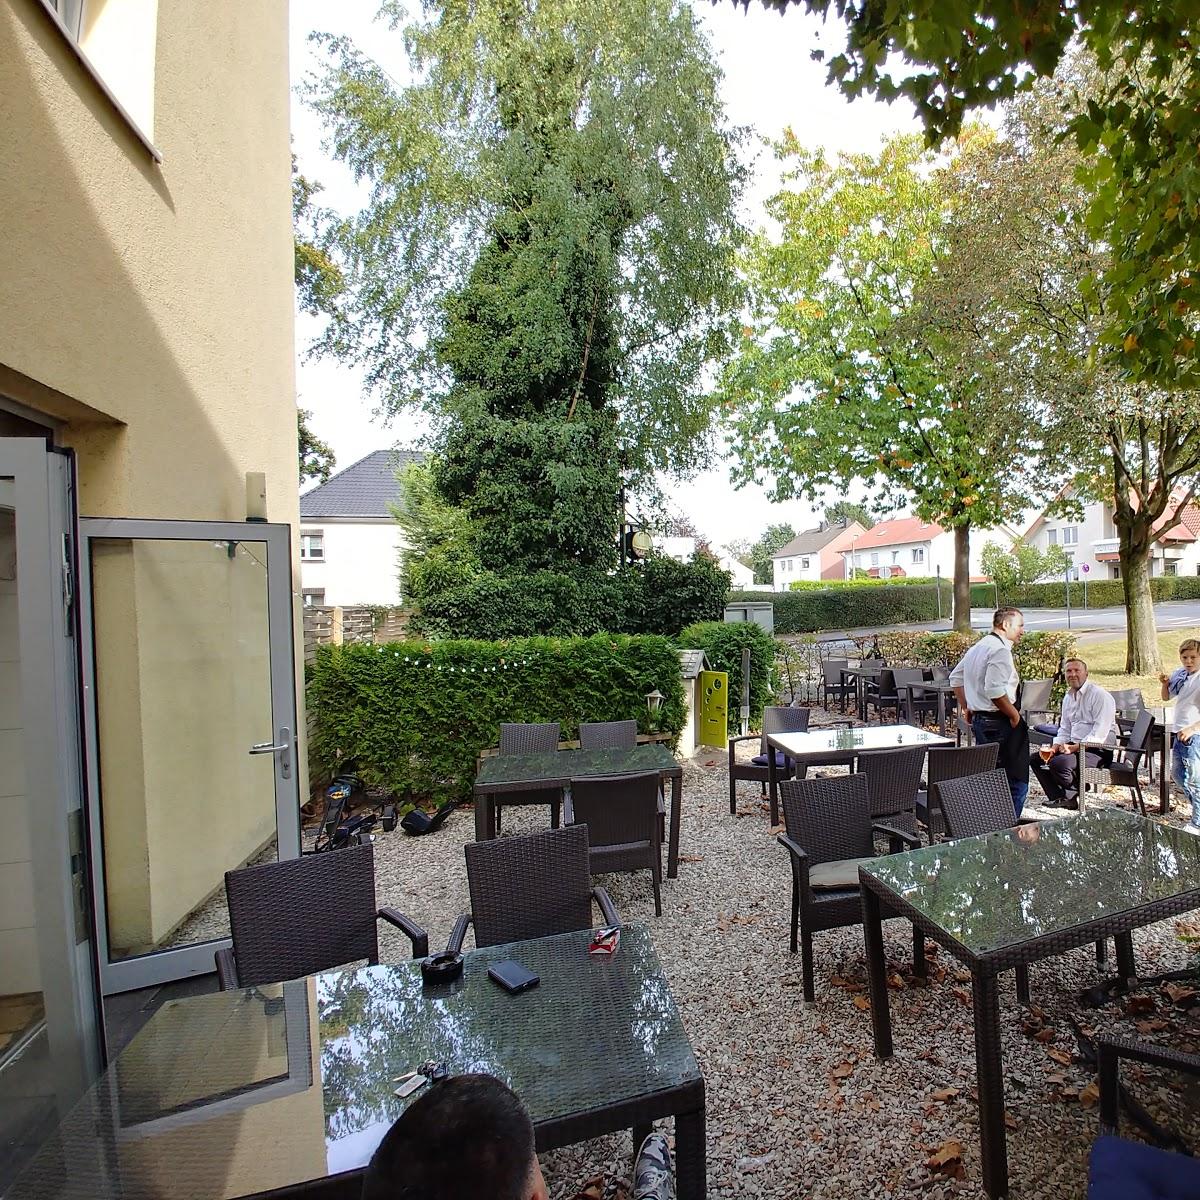 Restaurant "Restaurant Osteria Im Kachelöfchen" in  Paderborn